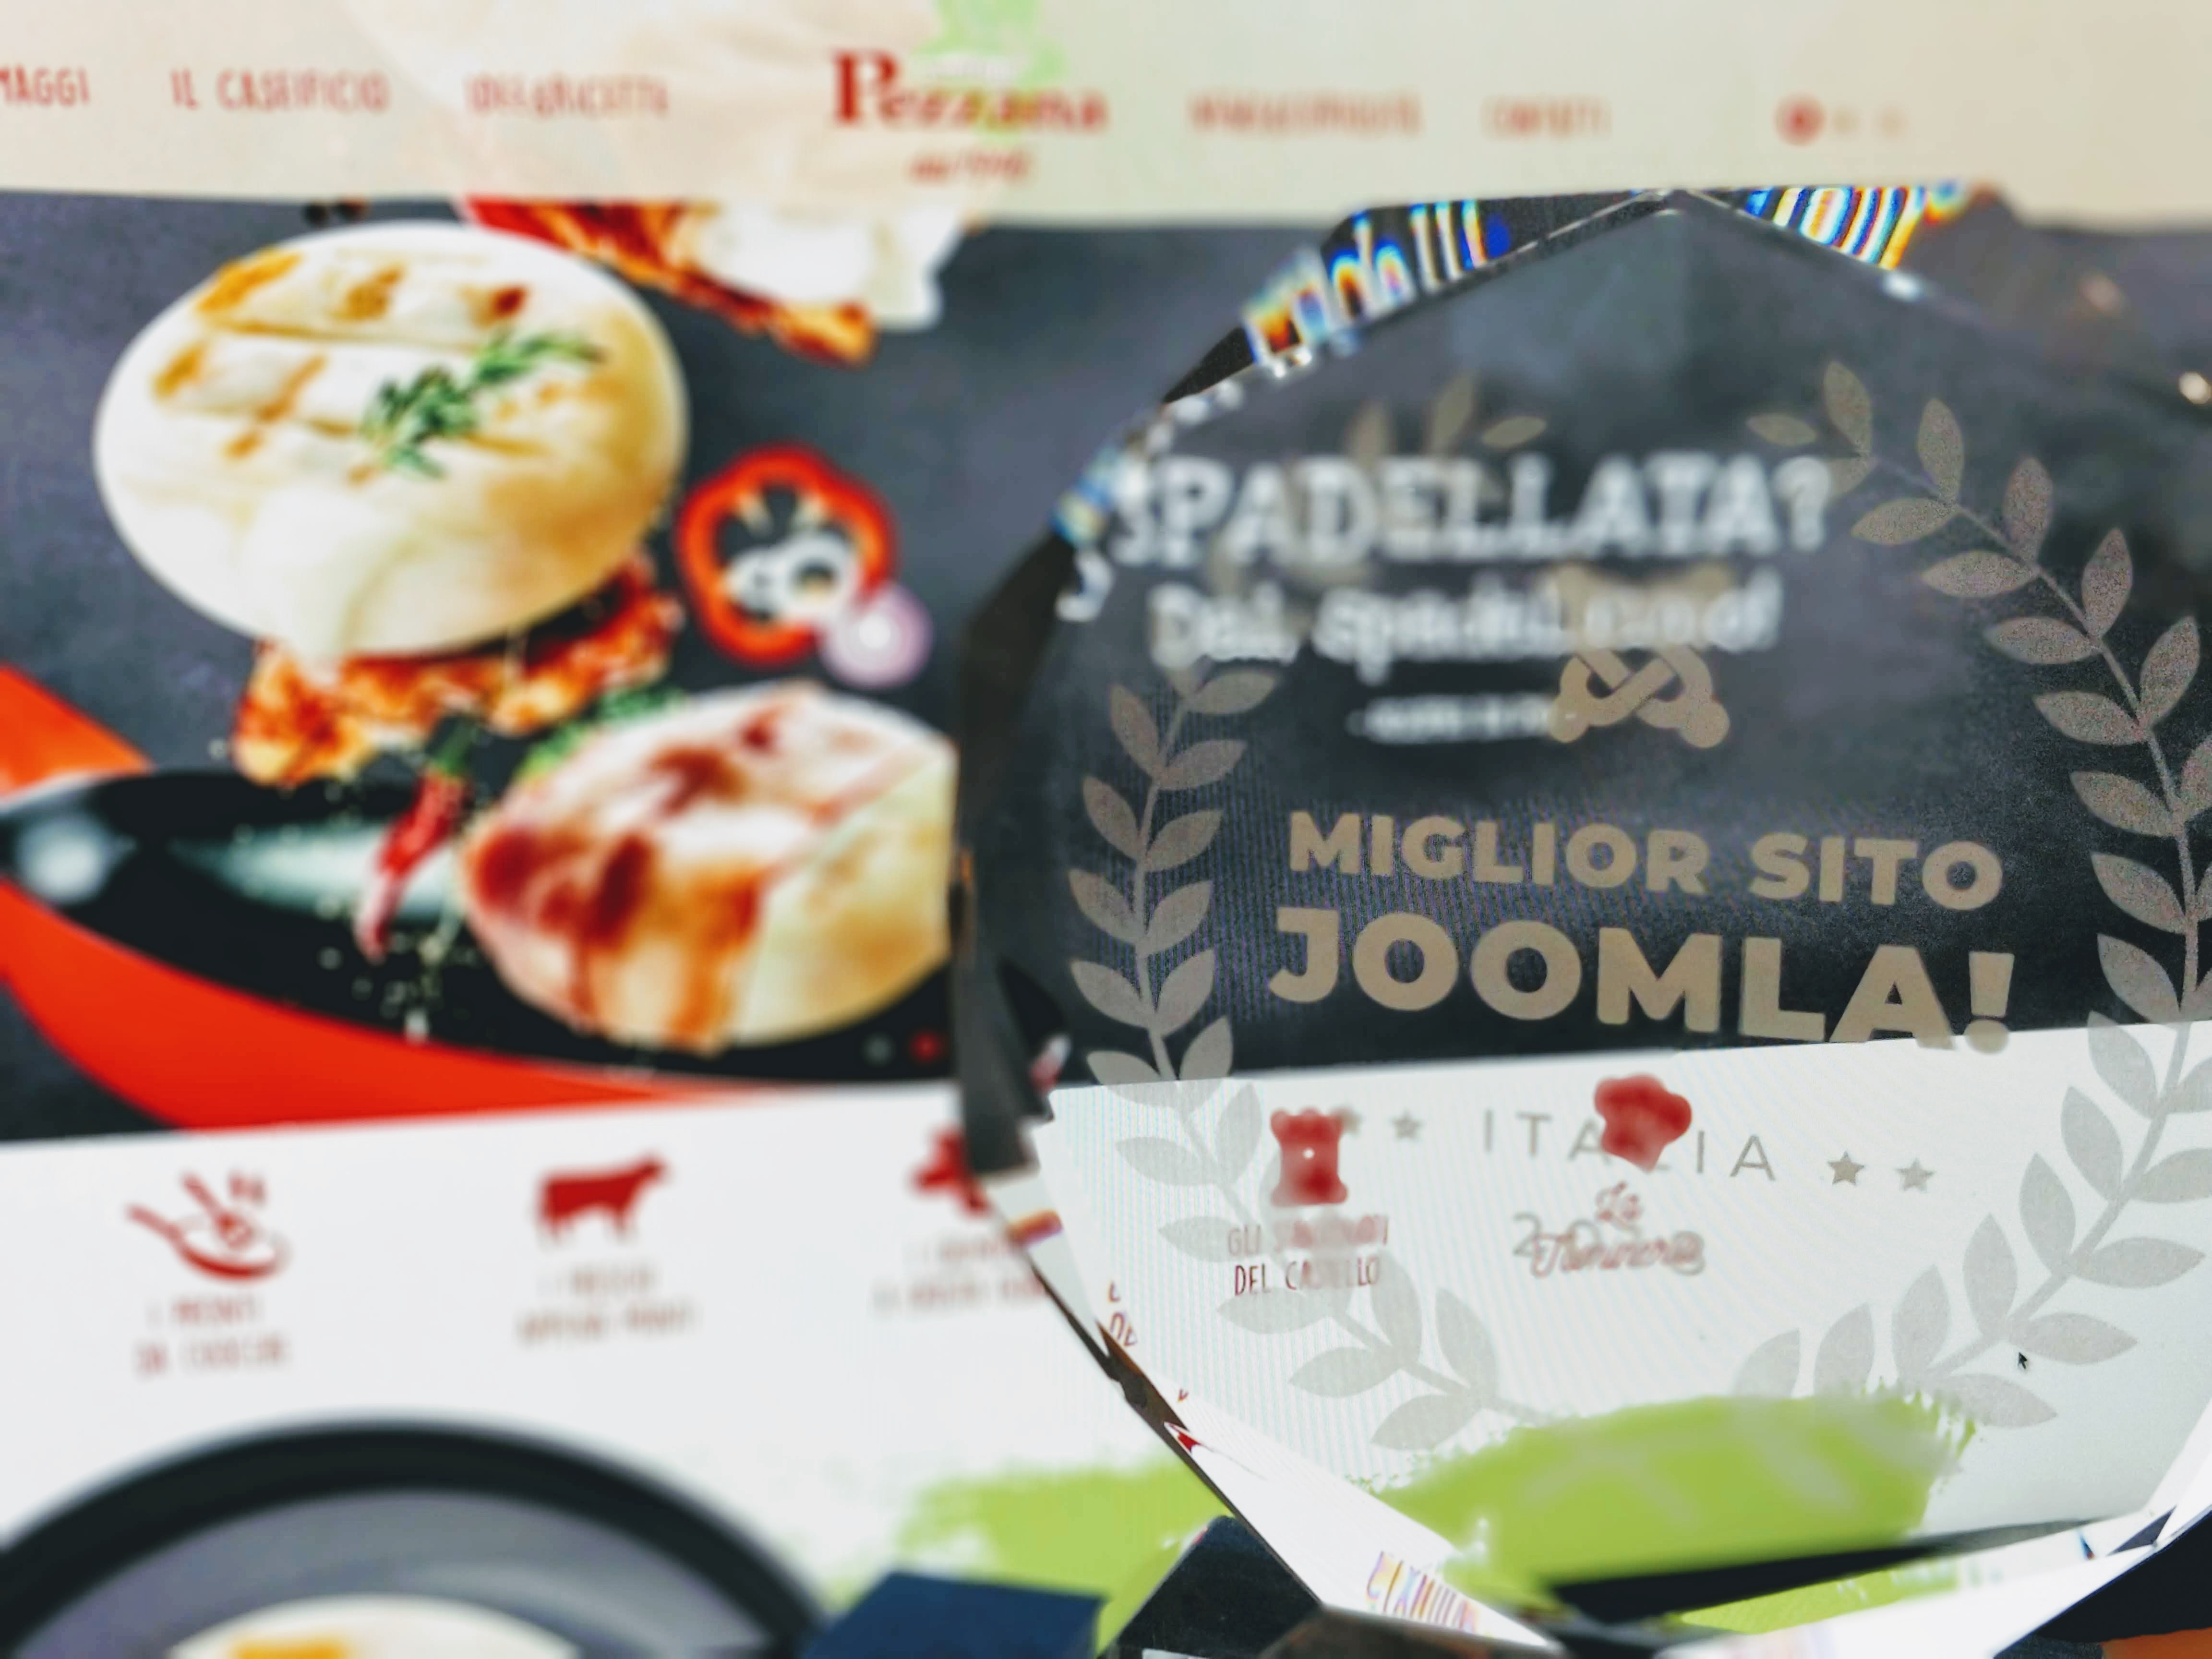 Media and More vince il premio "Miglior sito Joomla d'Italia"